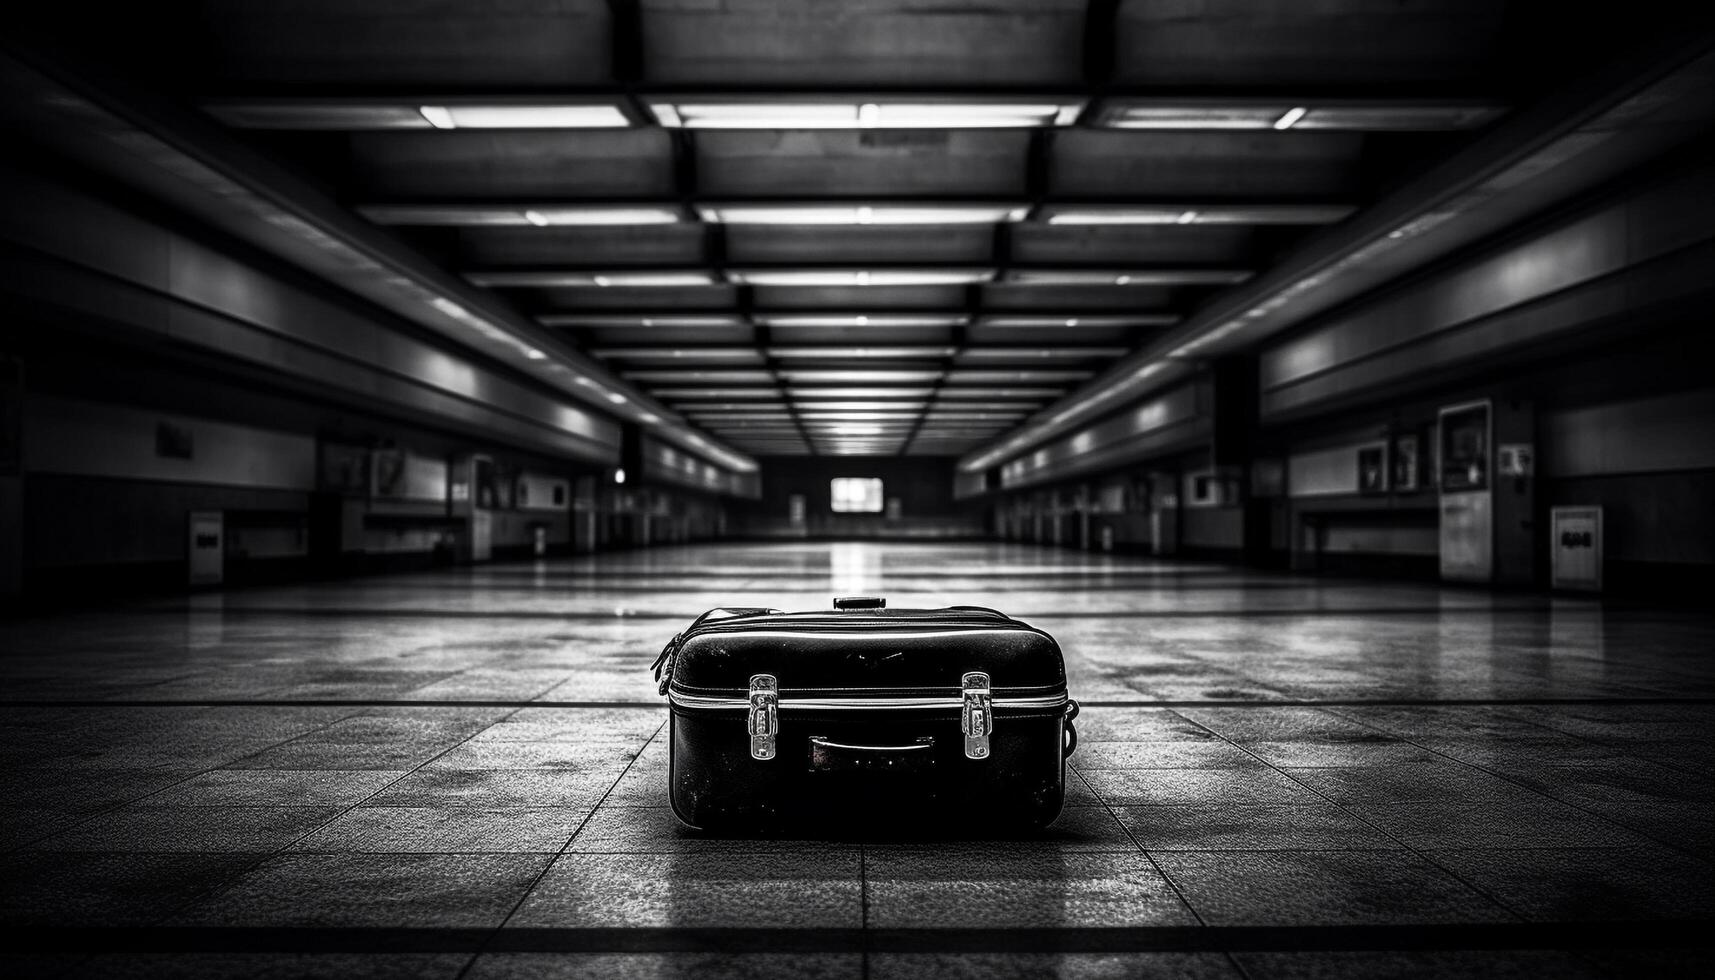 Abandoned luggage vanishing into the futuristic underground entrance hall generated by AI photo